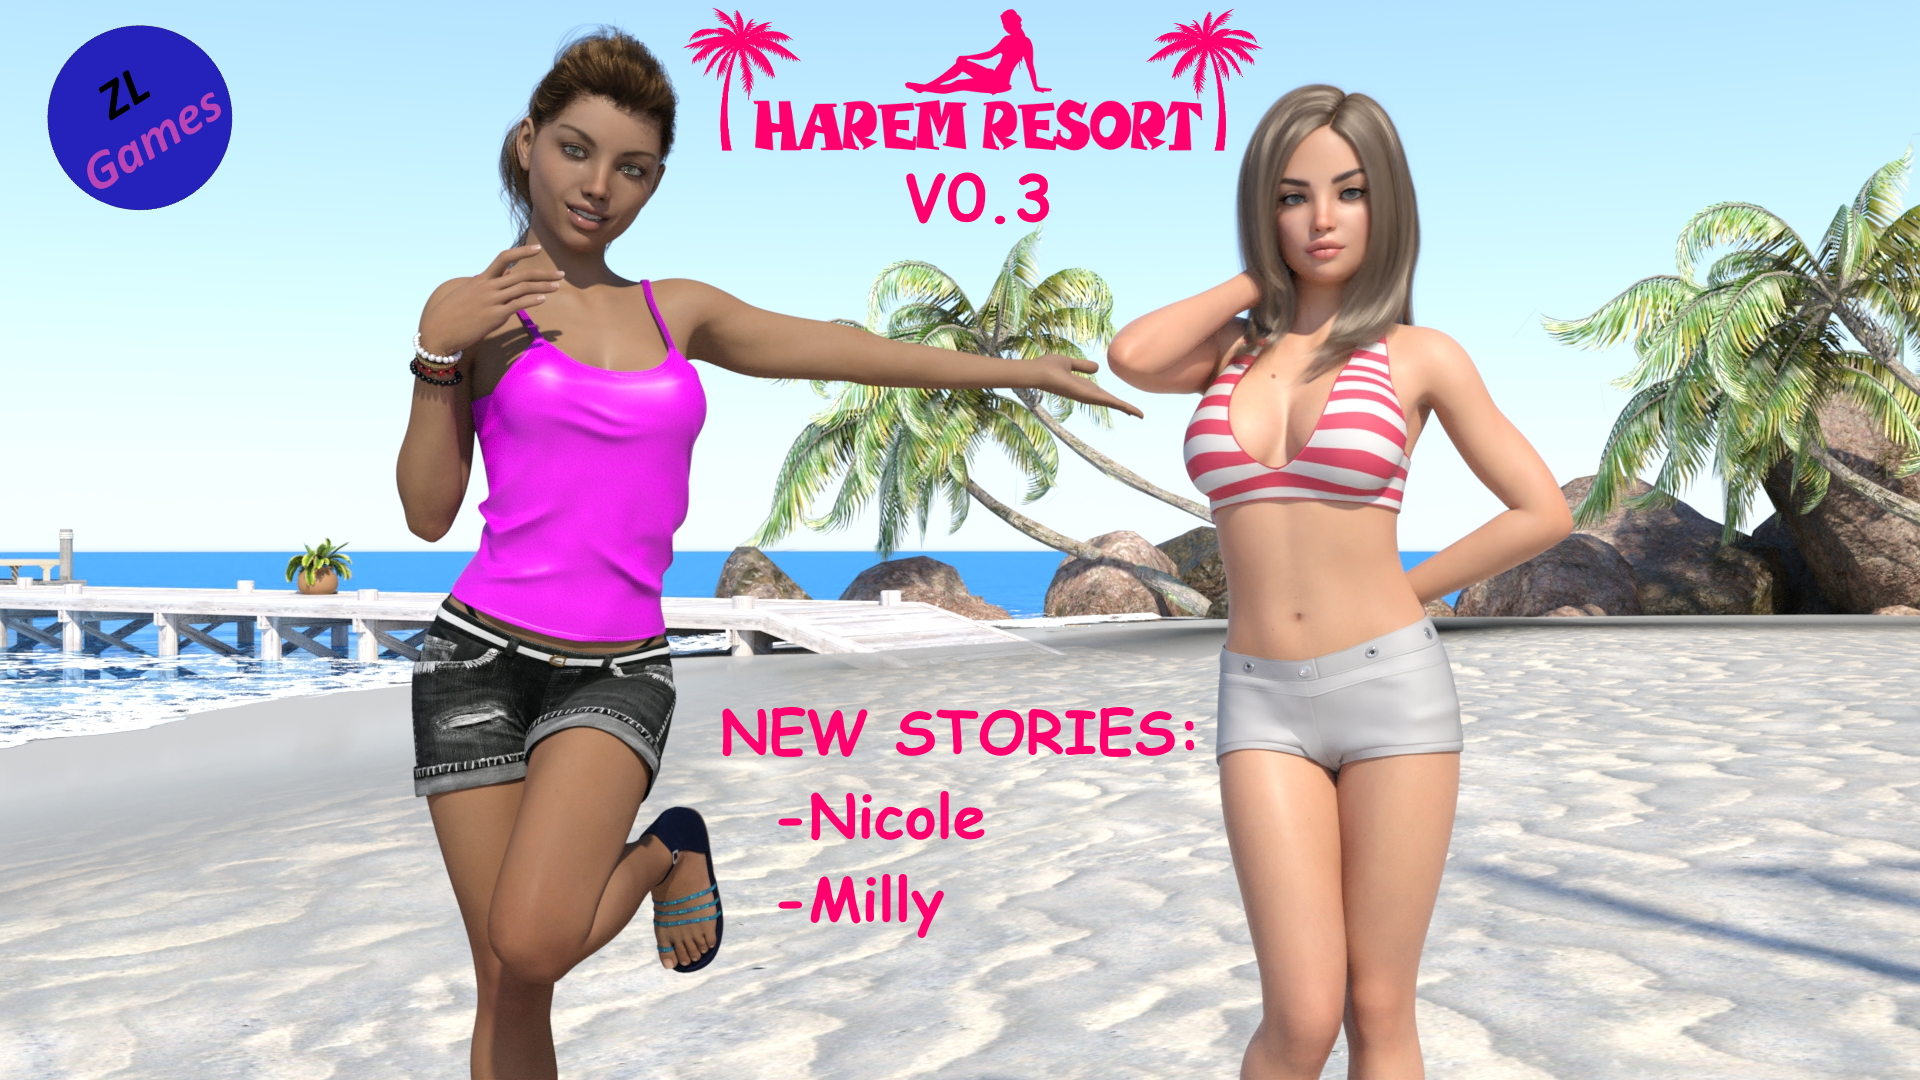 Release Harem Resort V0.3 for patrons 20$ or more.